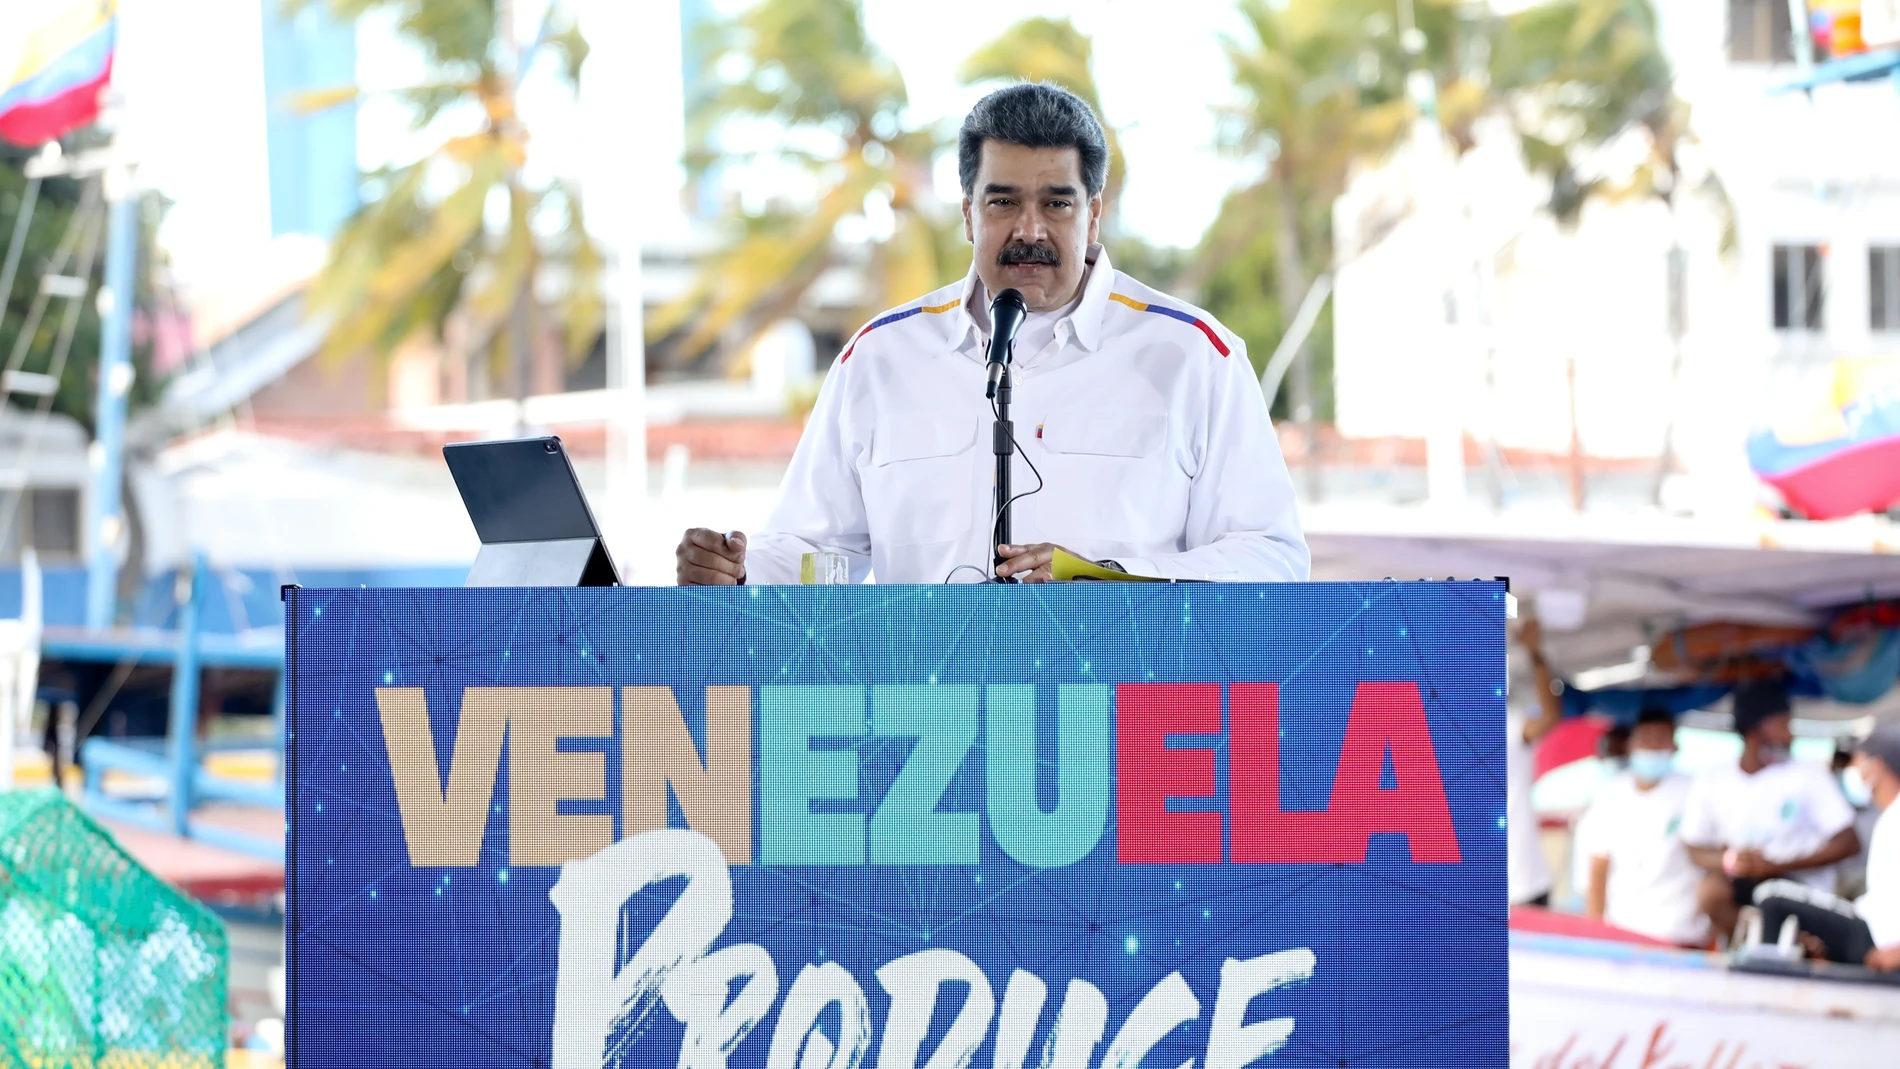 Fotografía cedida por el Palacio de Miraflores donde se observa al presidente de Venezuela, Nicolás Maduro, durante un acto con pescadores